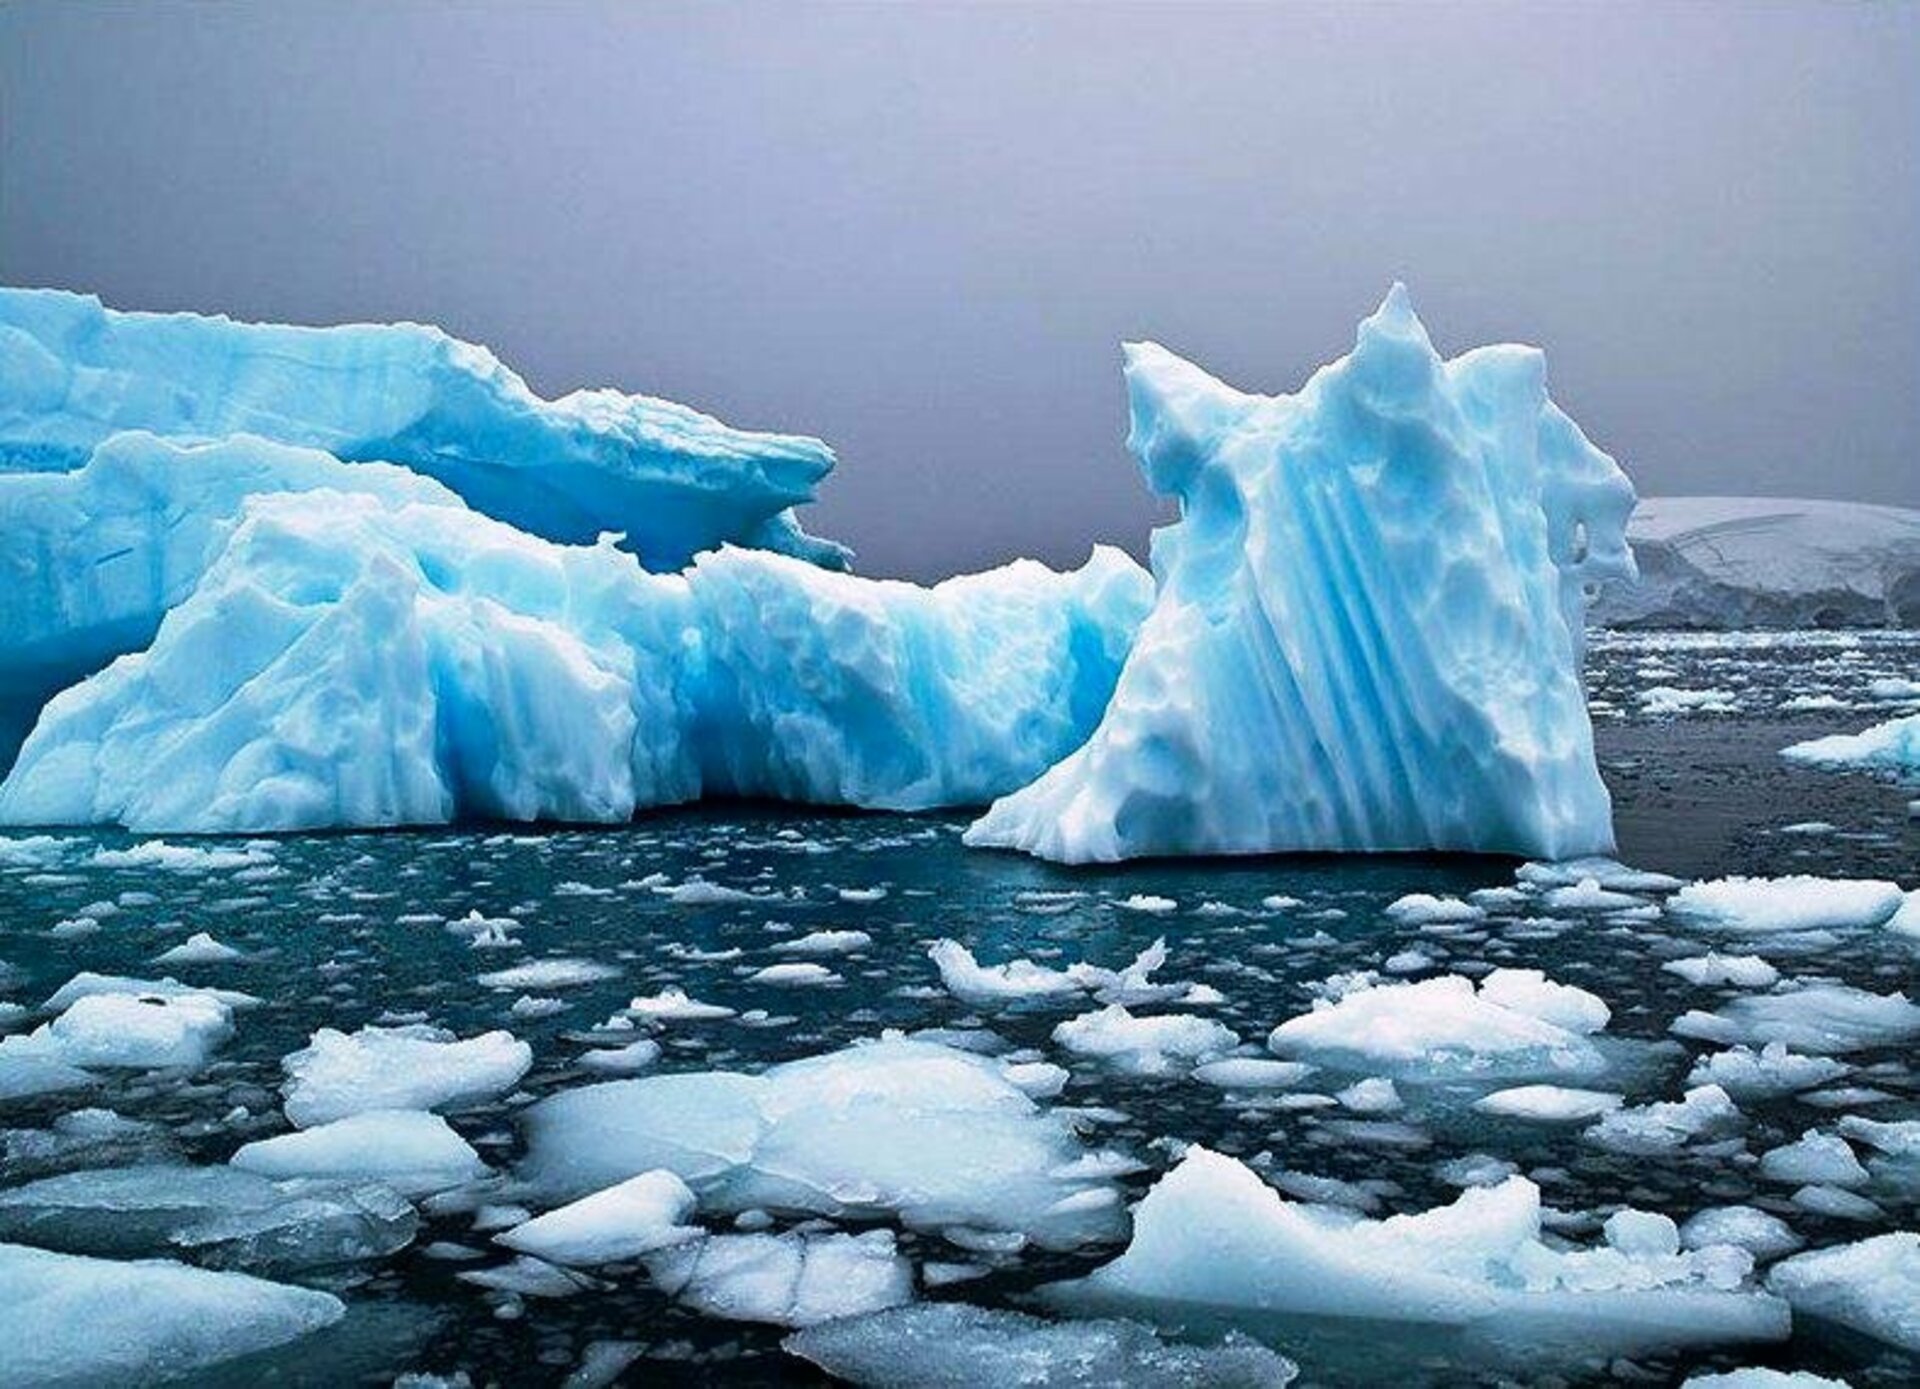 Океан покрытый льдом. Ледяной Покров Северного Ледовитого океана. Ледники Арктики. Айсберги Северного Ледовитого океана. Льды Северного Ледовитого океана.